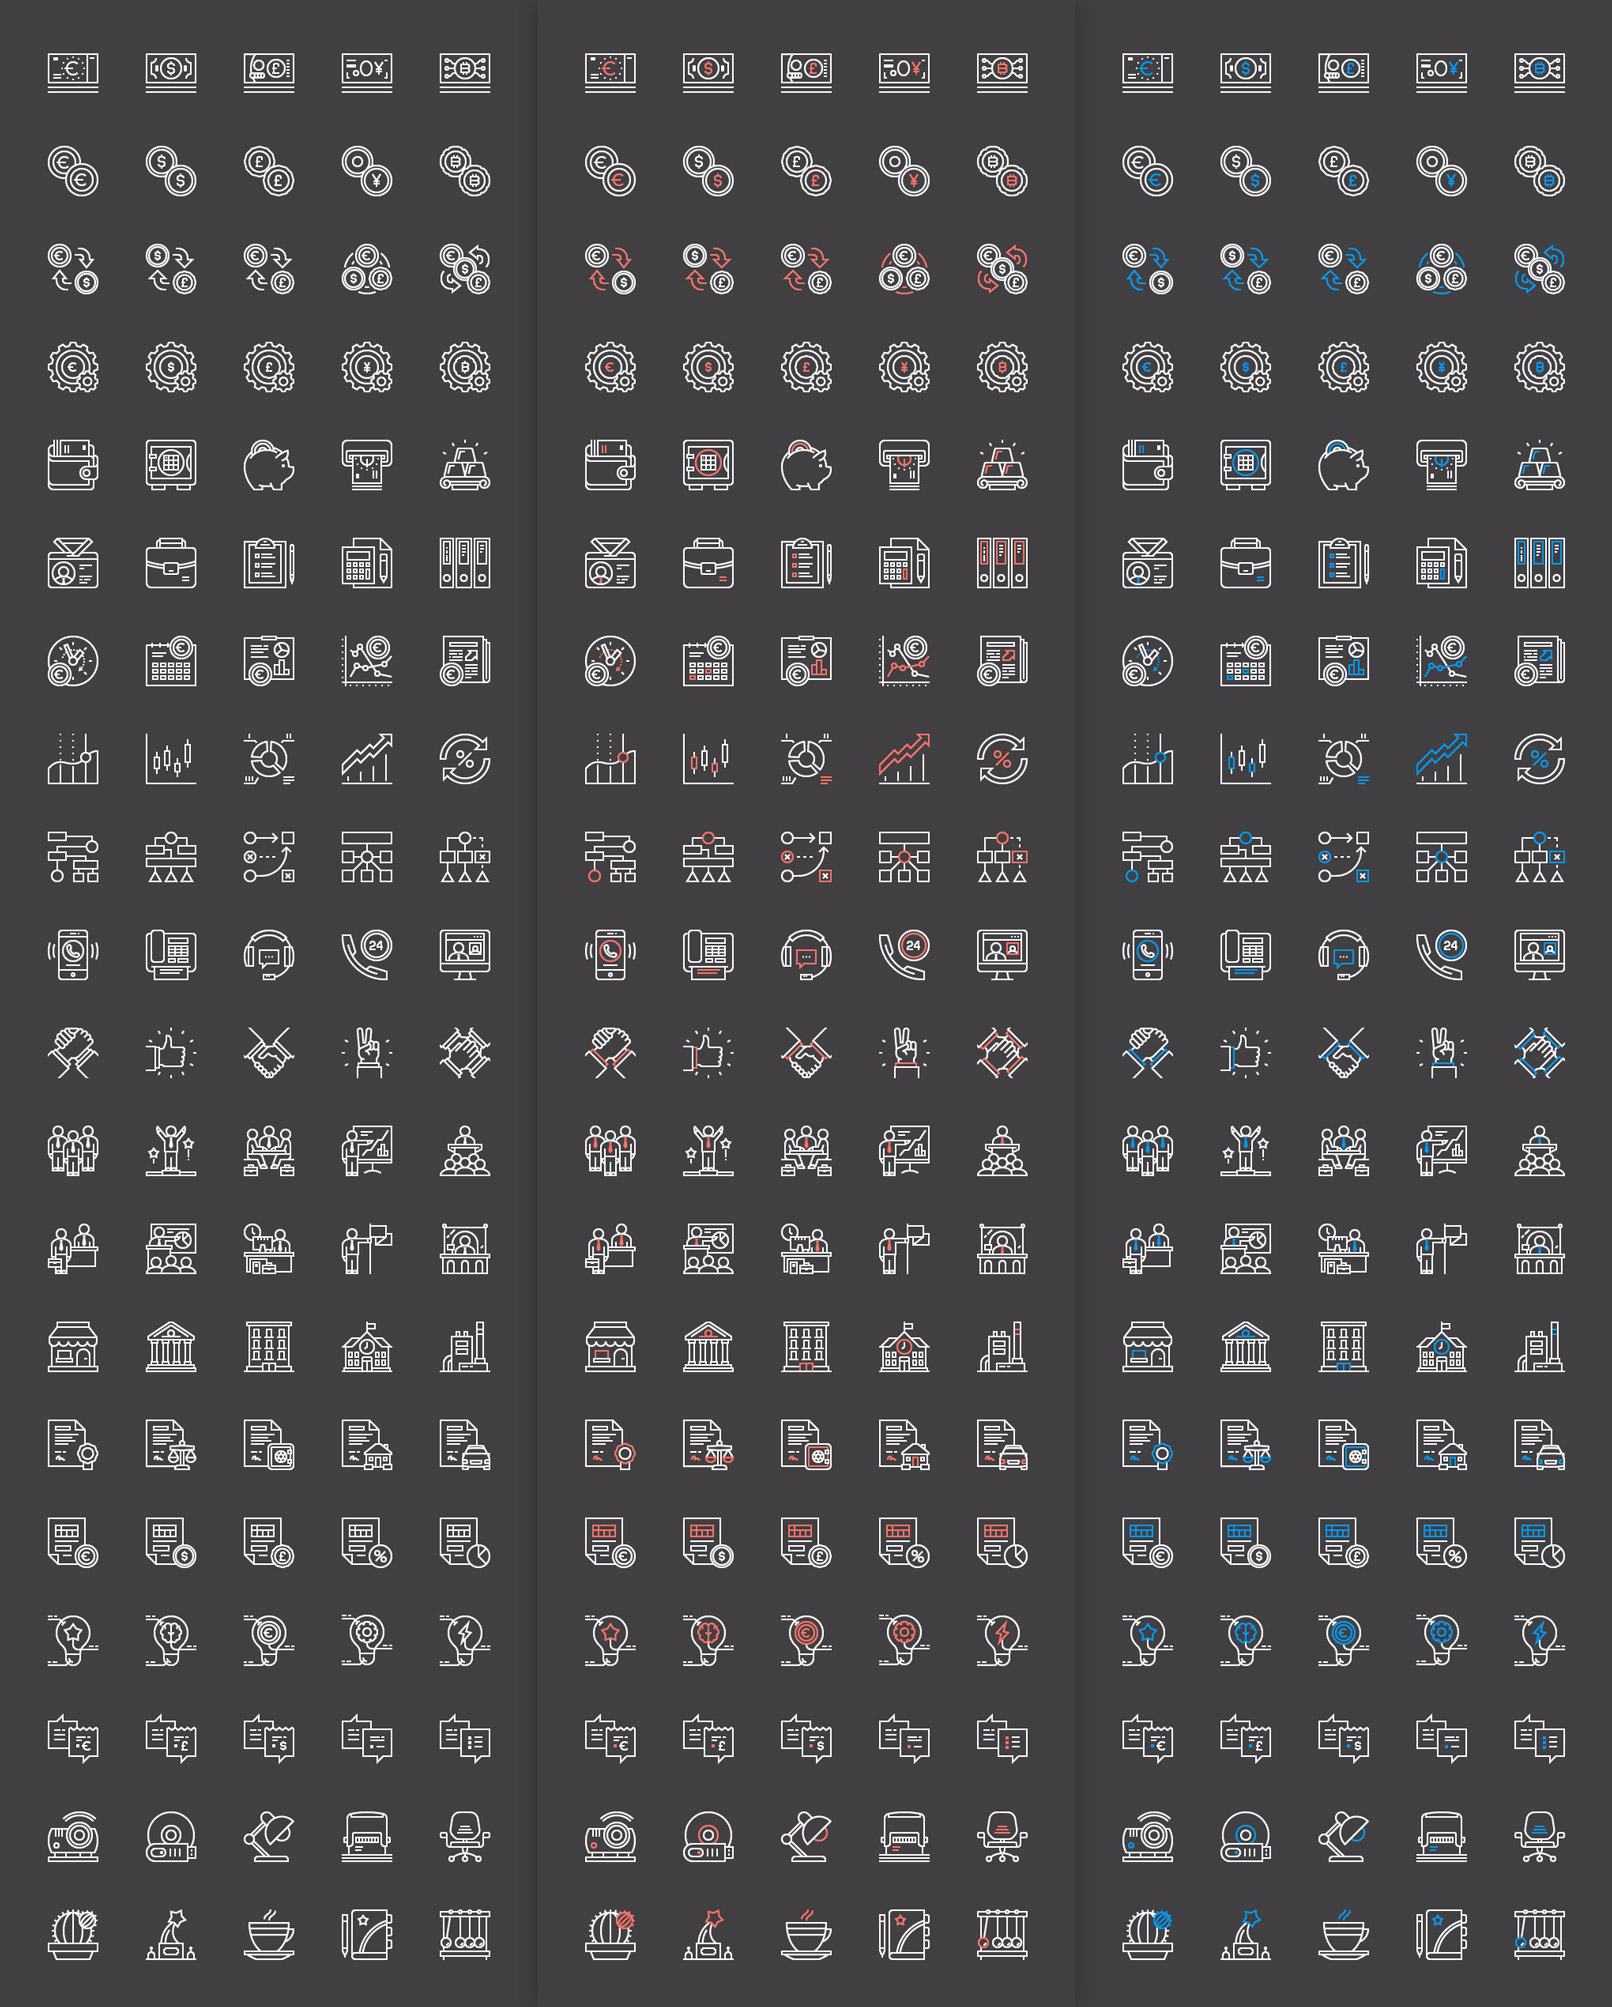 100 Business-Icons zum Download, hier werden drei Farbvarianten mit weißer Kontur gezeigt